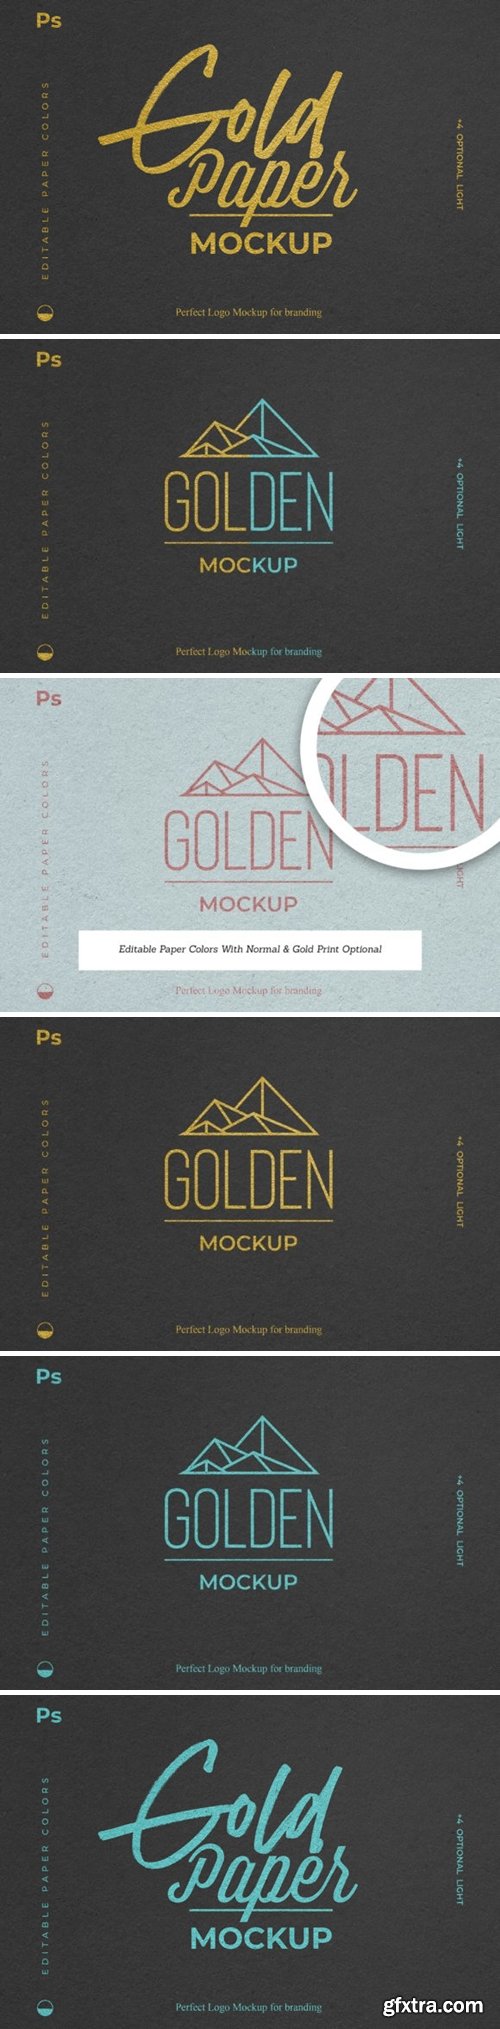 Gold Foil Paper Logo Mockup 2200904